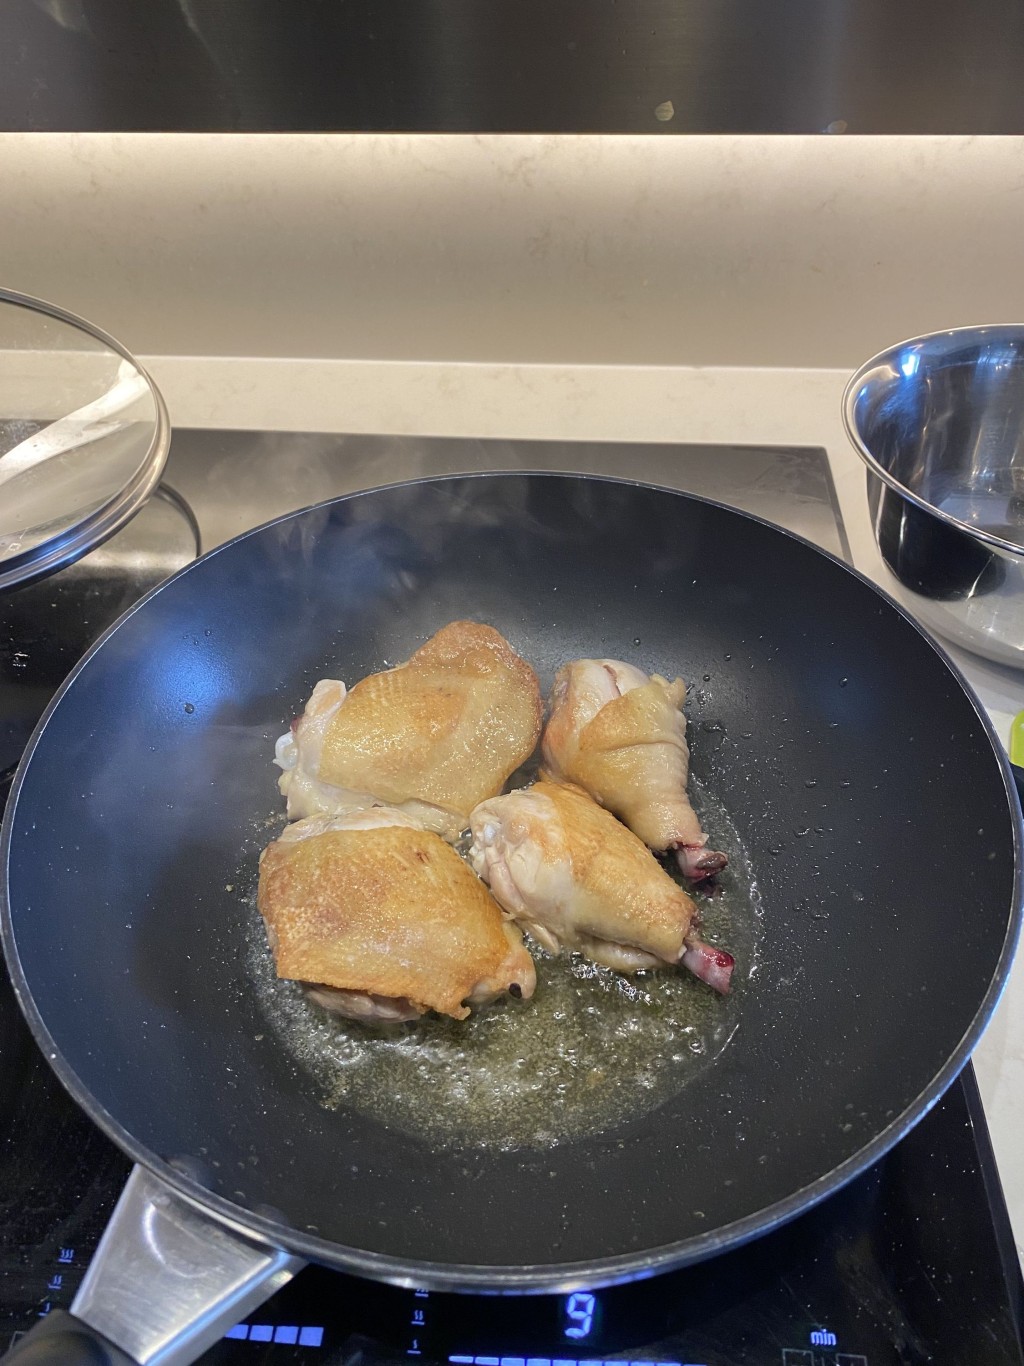 1. 雞髀撲上少許麵粉，再用橄欖油和平鑊煎至金黃色。移除，備用。